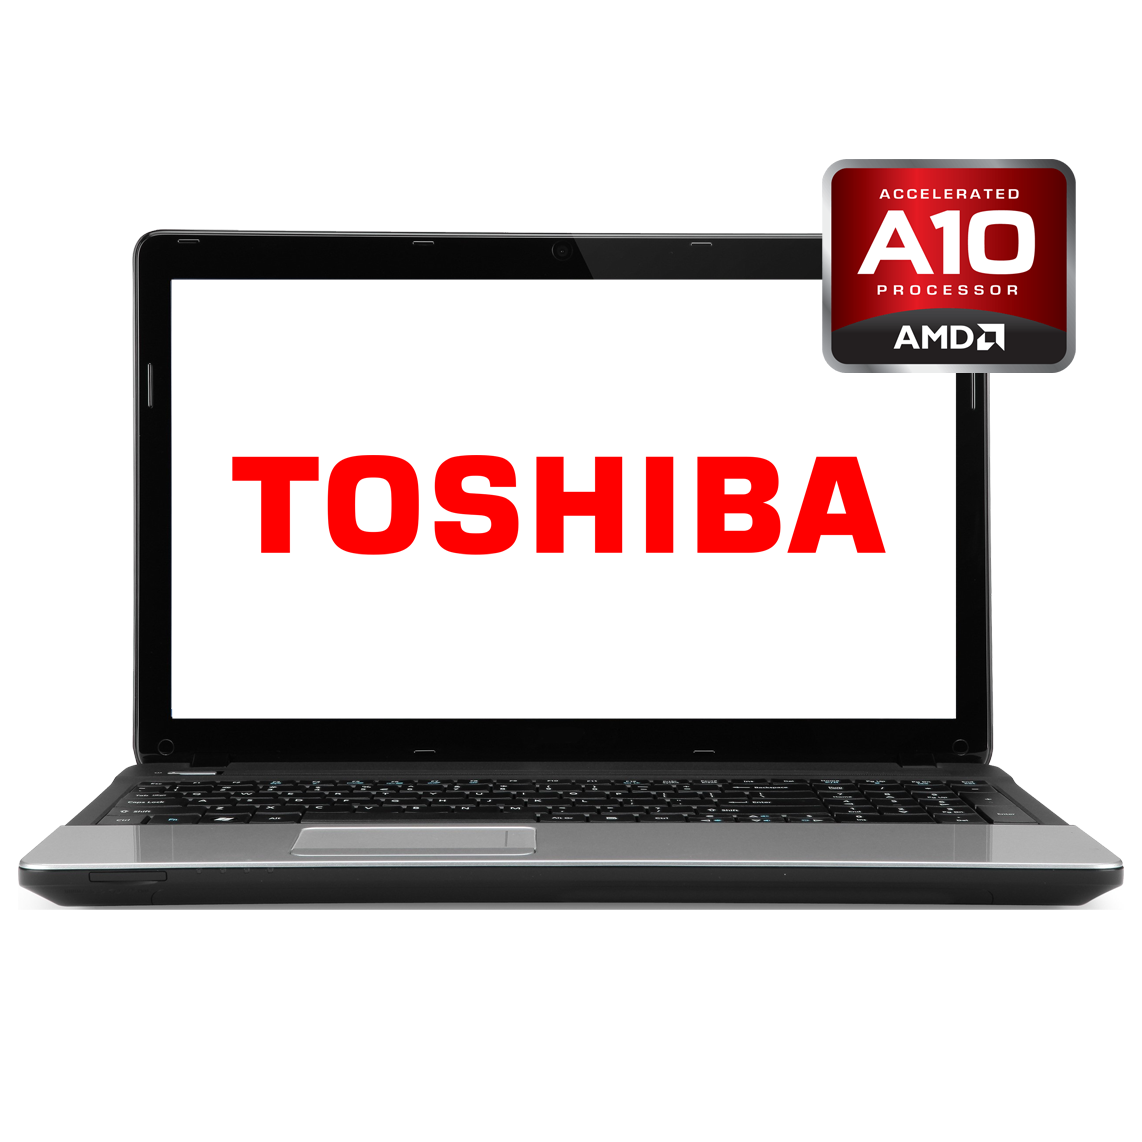 Toshiba - 15.6 inch AMD A10